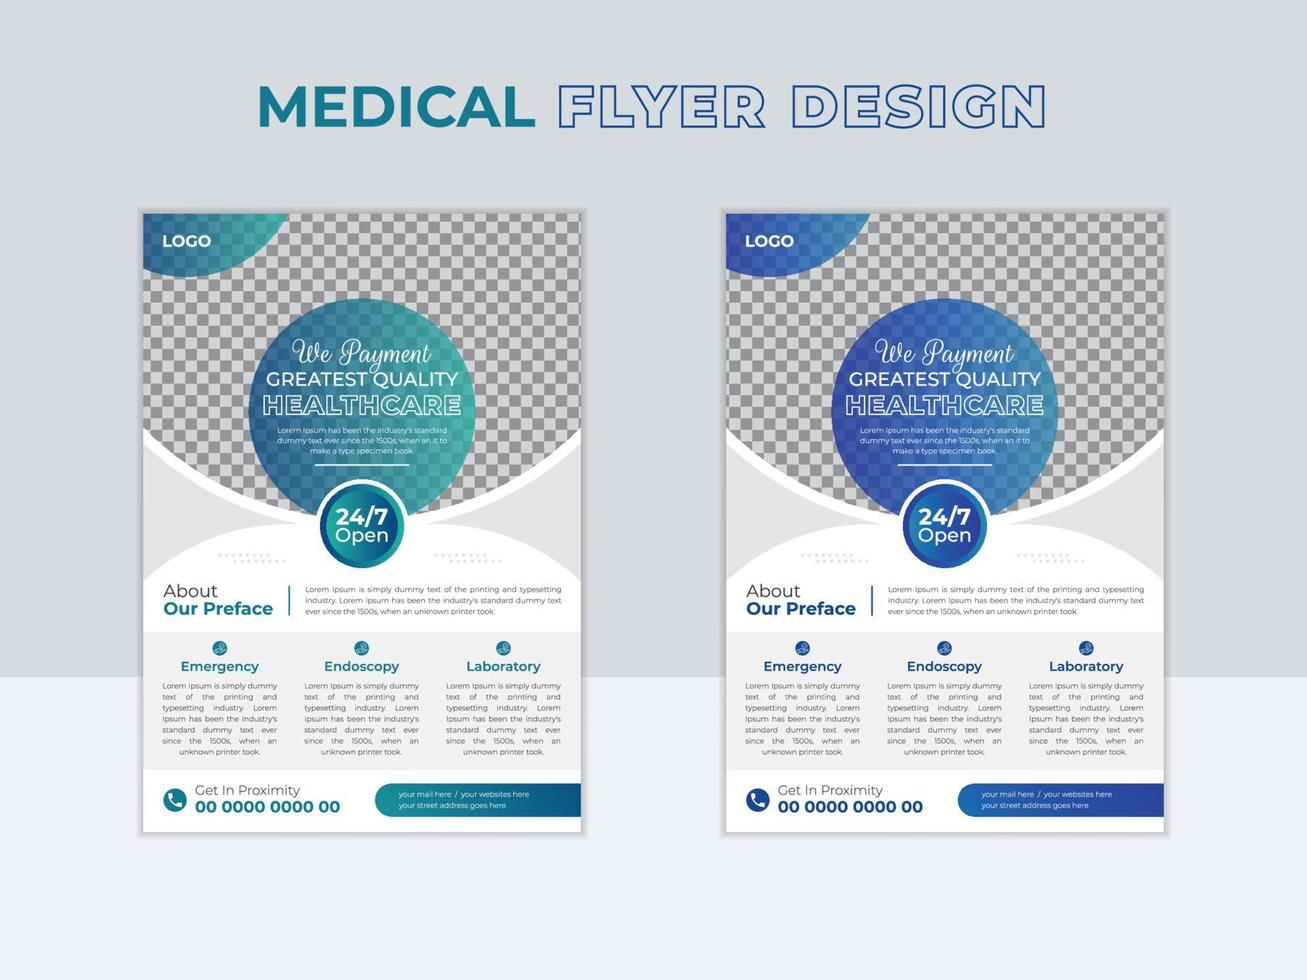 gezondheidszorg medisch folder lay-out ontwerp sjabloon vector